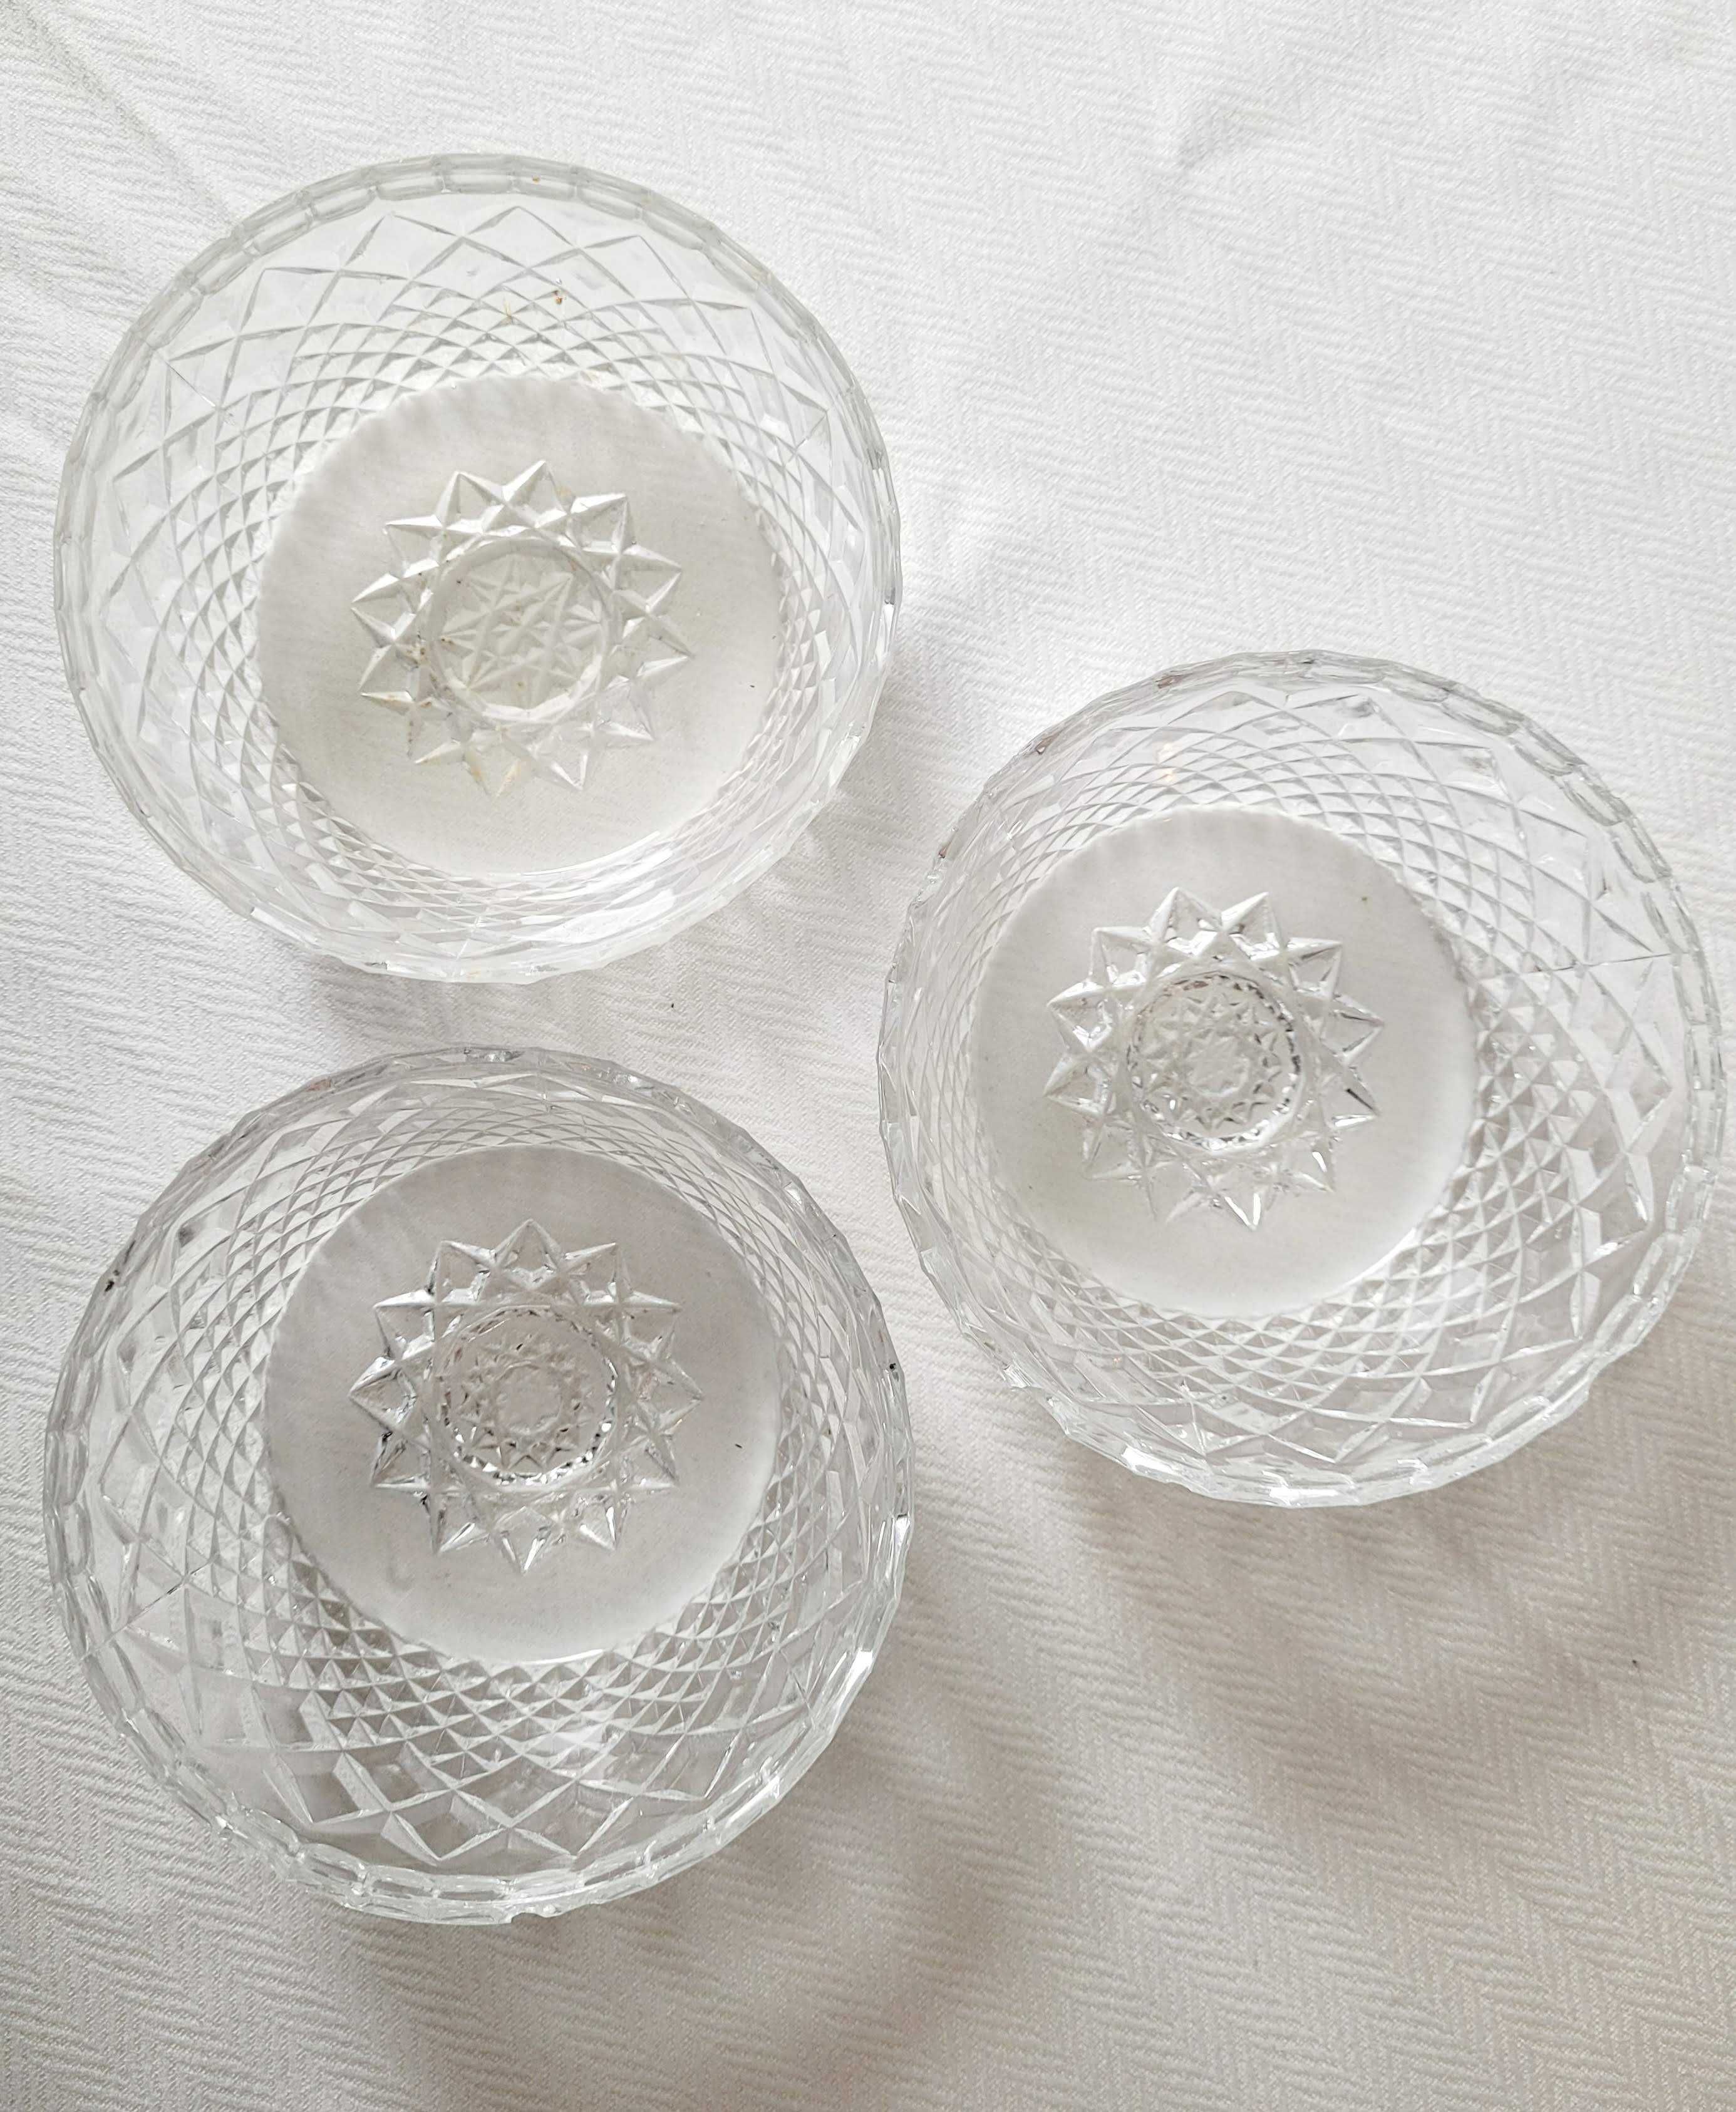 Kryształ - 3 miseczki - średnica 11,5 cm, piękny szlif